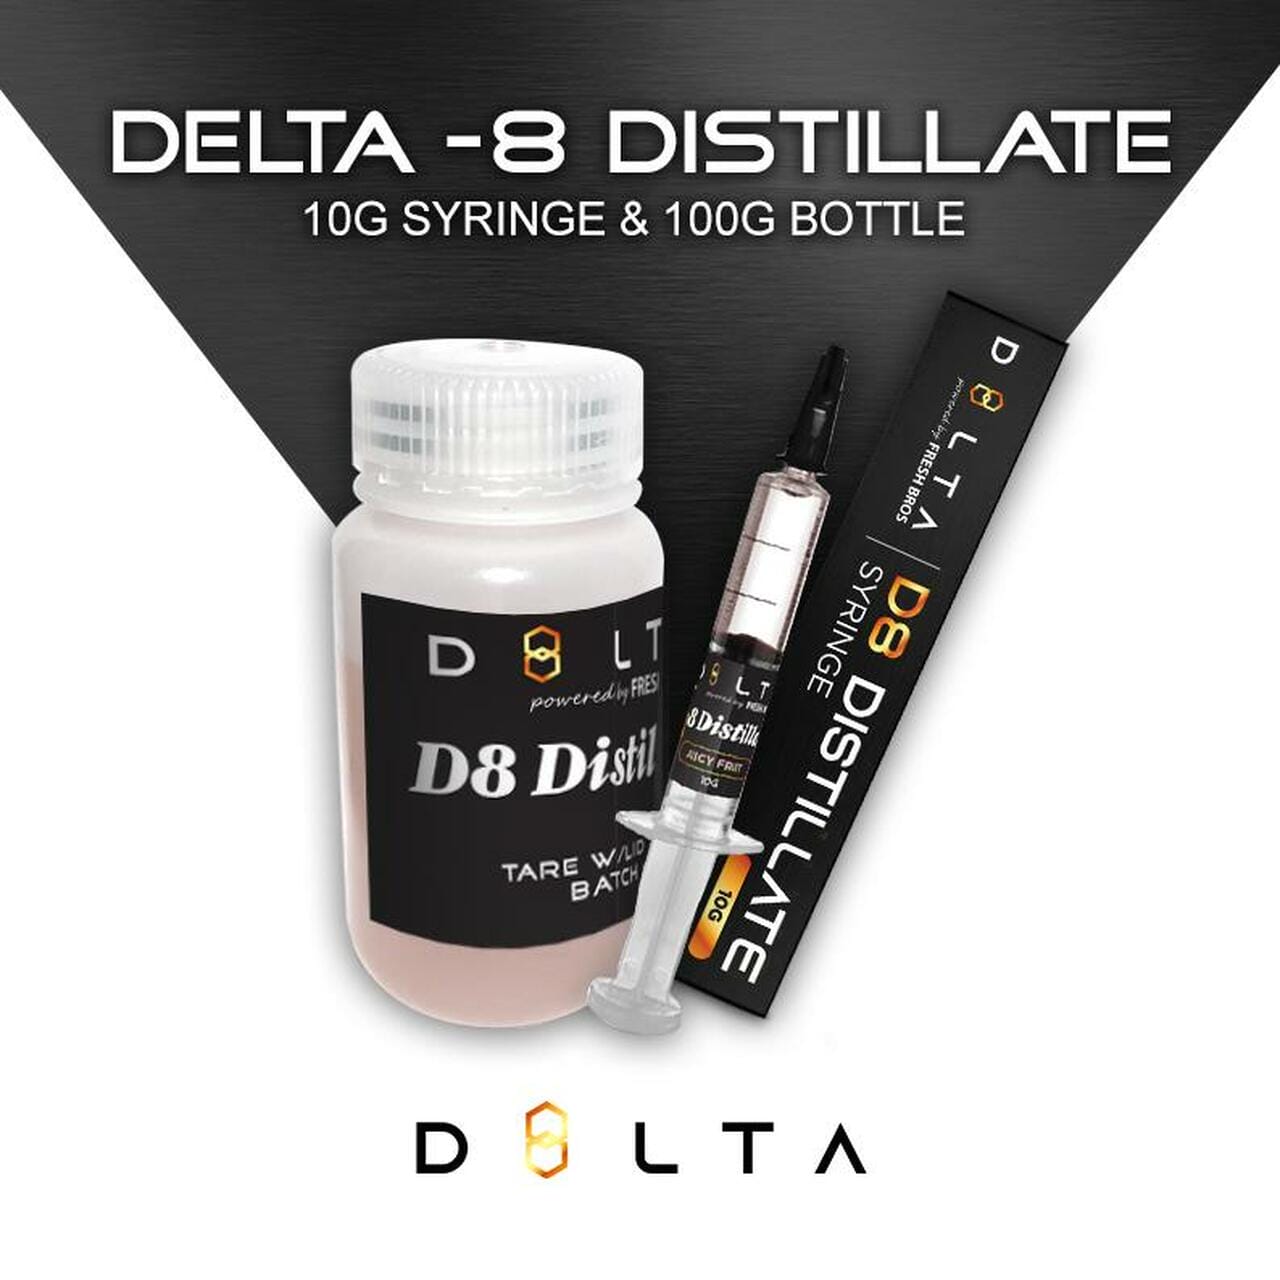 d8lta-compliant-delta-8-distillate-d8-thc-hemp-derived-delta-8-thc-10g-and-100g